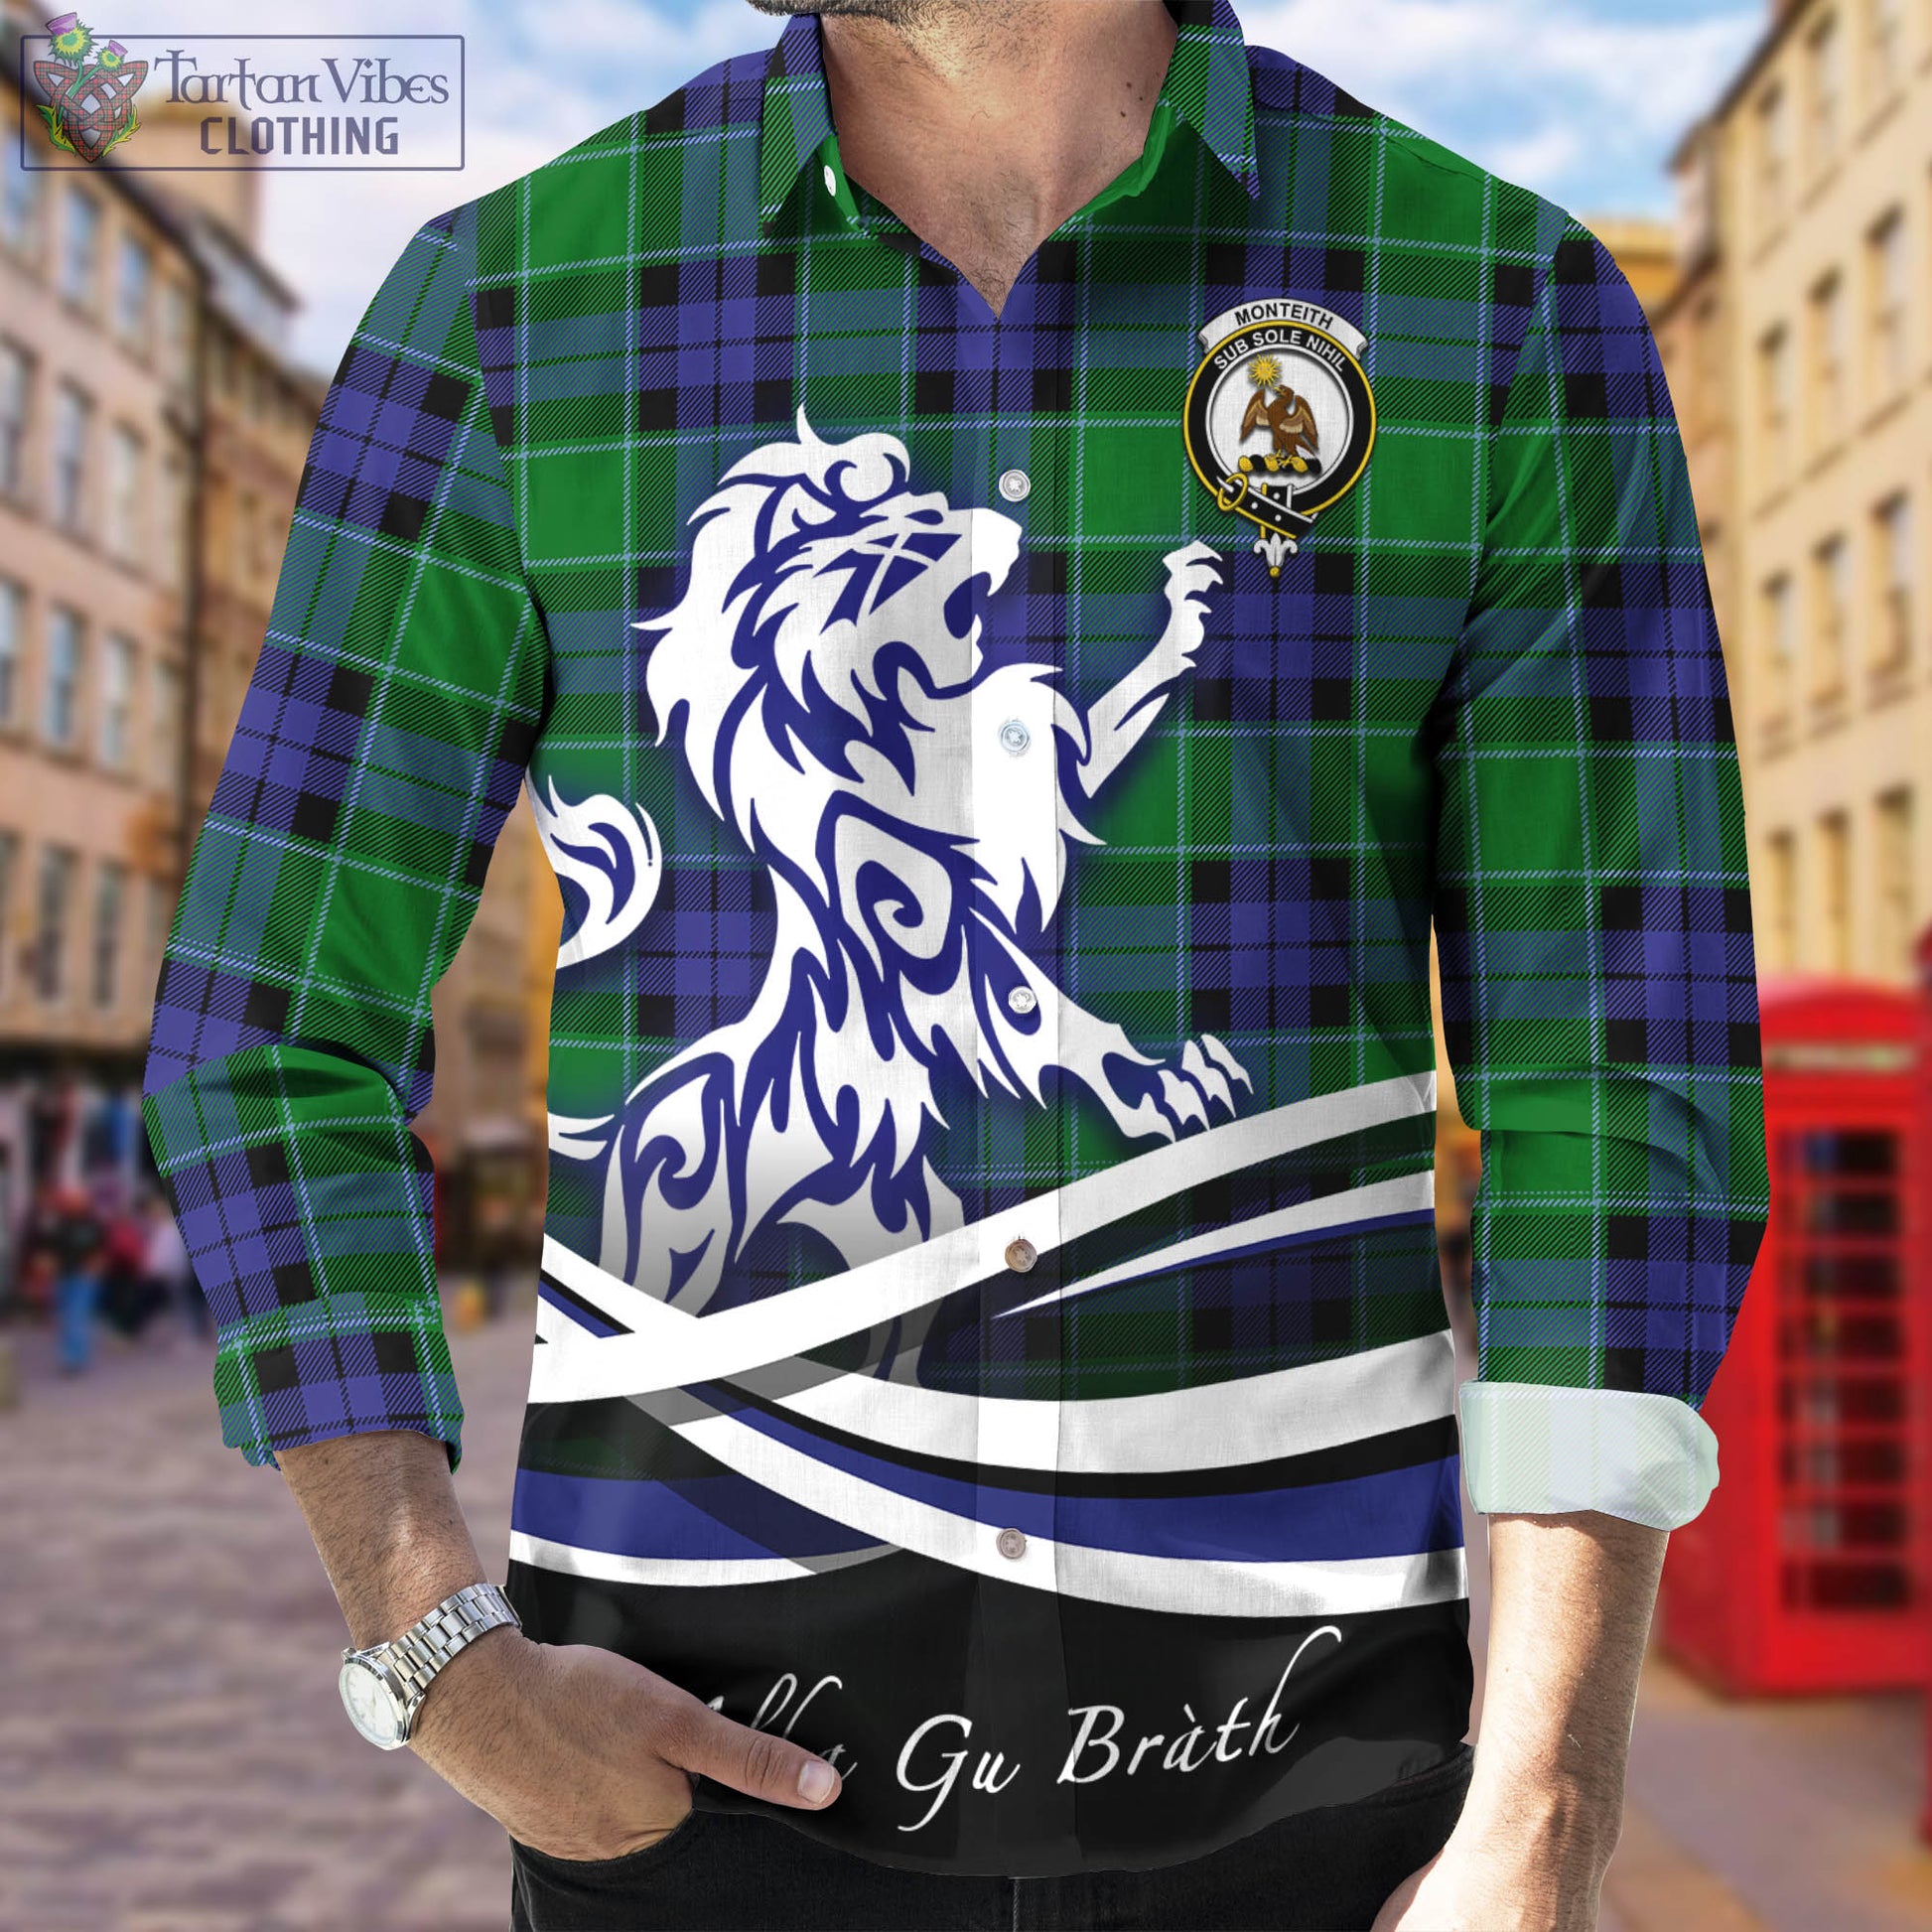 monteith-tartan-long-sleeve-button-up-shirt-with-alba-gu-brath-regal-lion-emblem